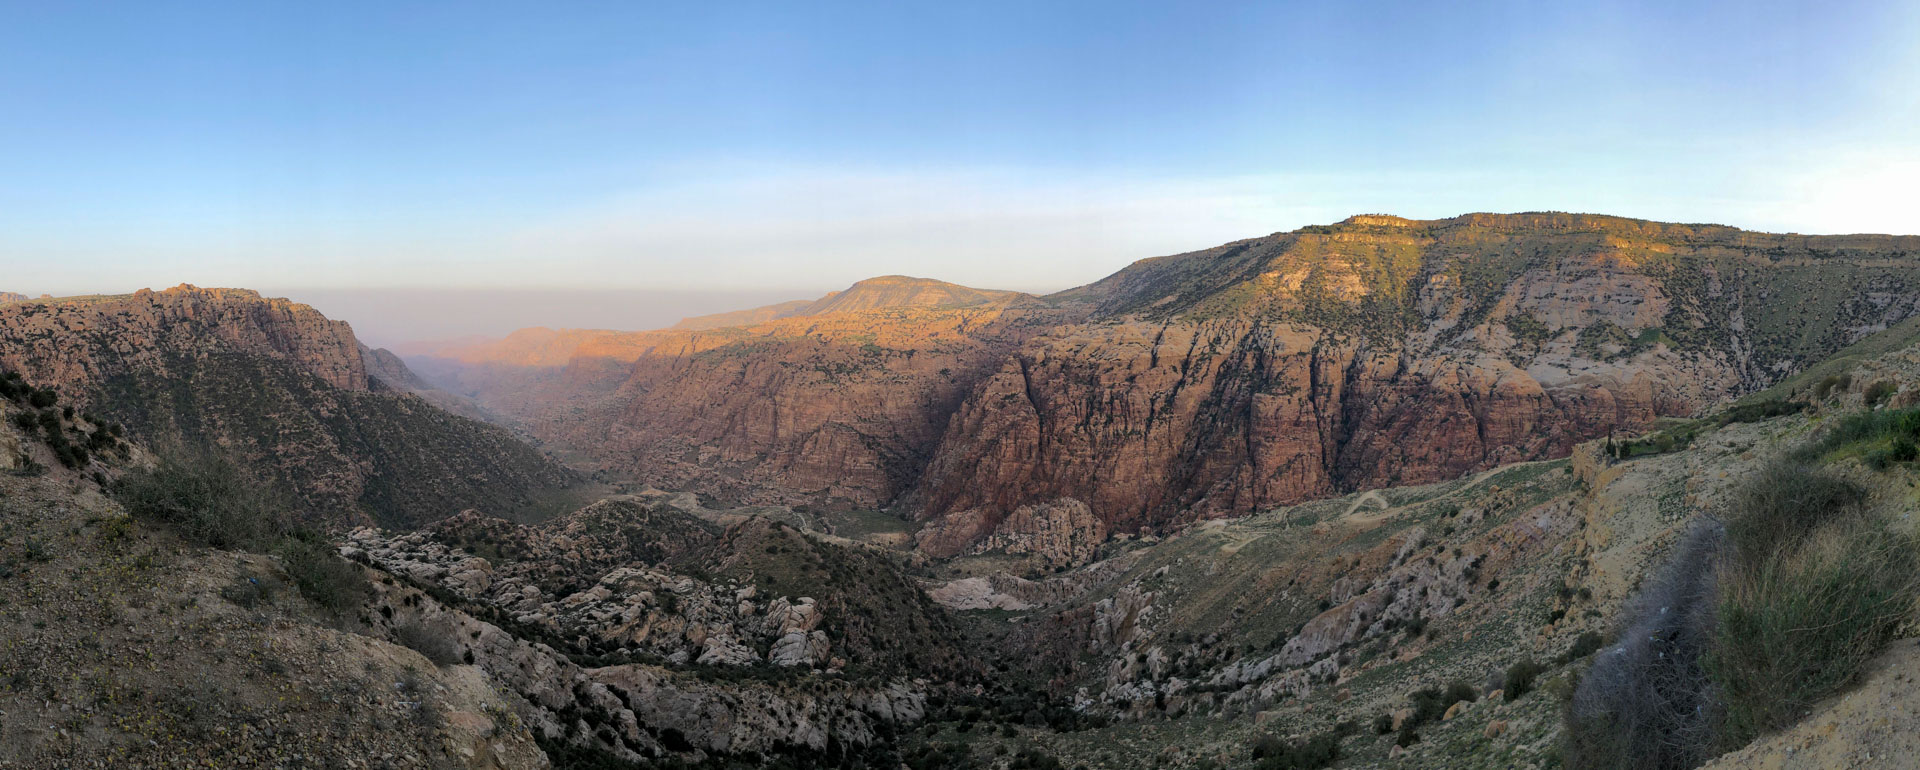 Ausblick in den Canyon